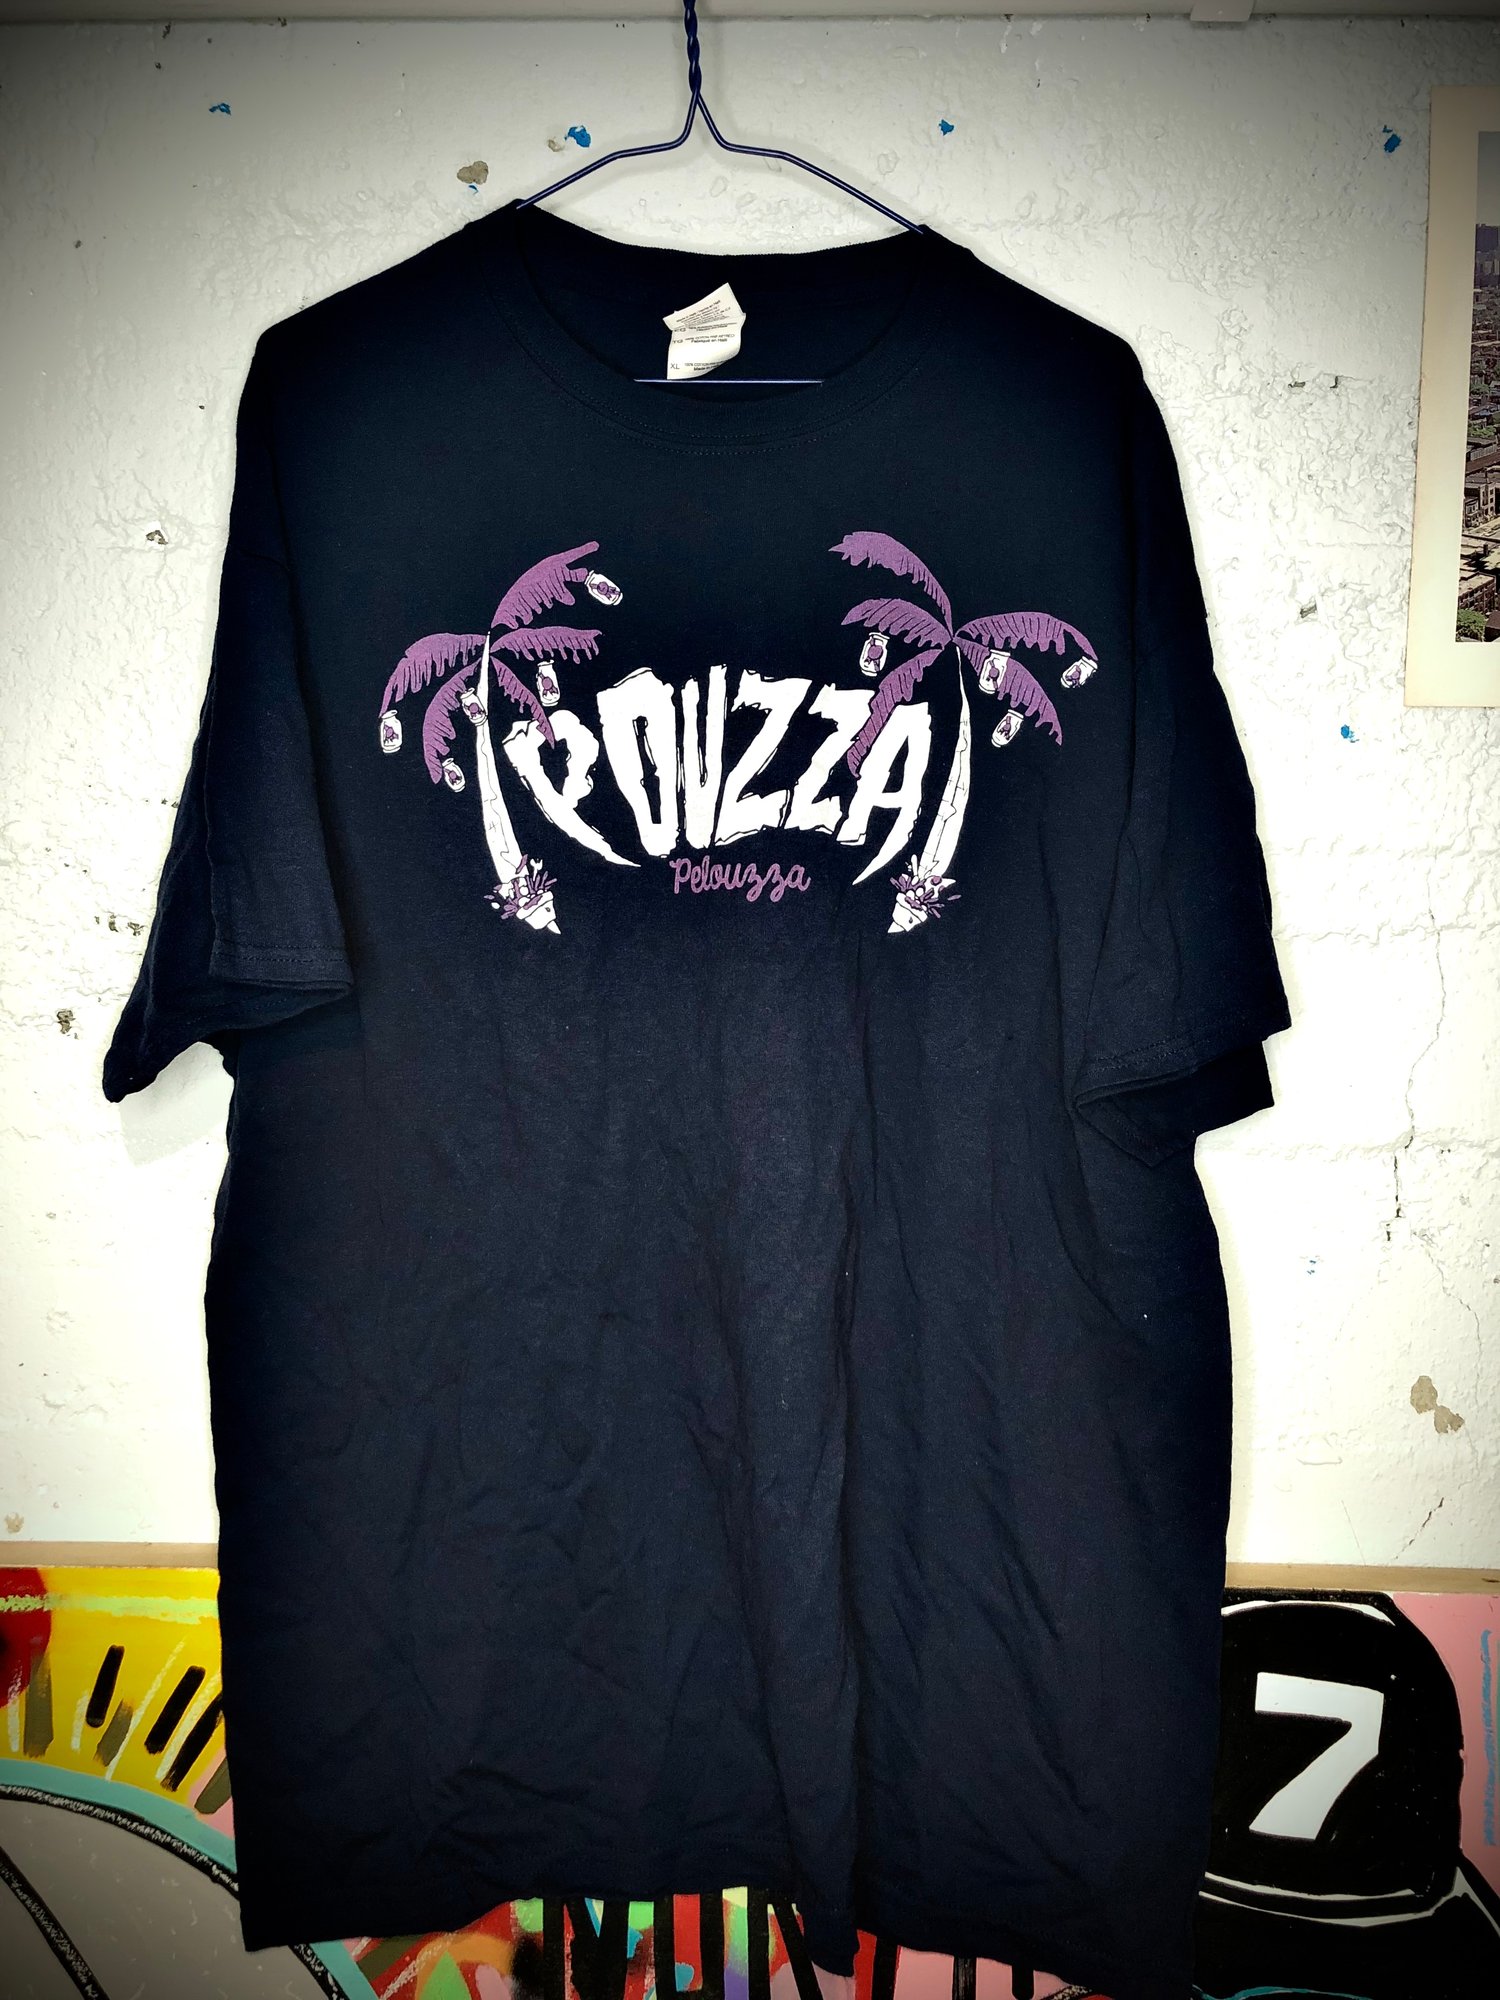 Image de Pouzza Pelouzza T-shirt ( XL SEULEMENT / ONLY XL )